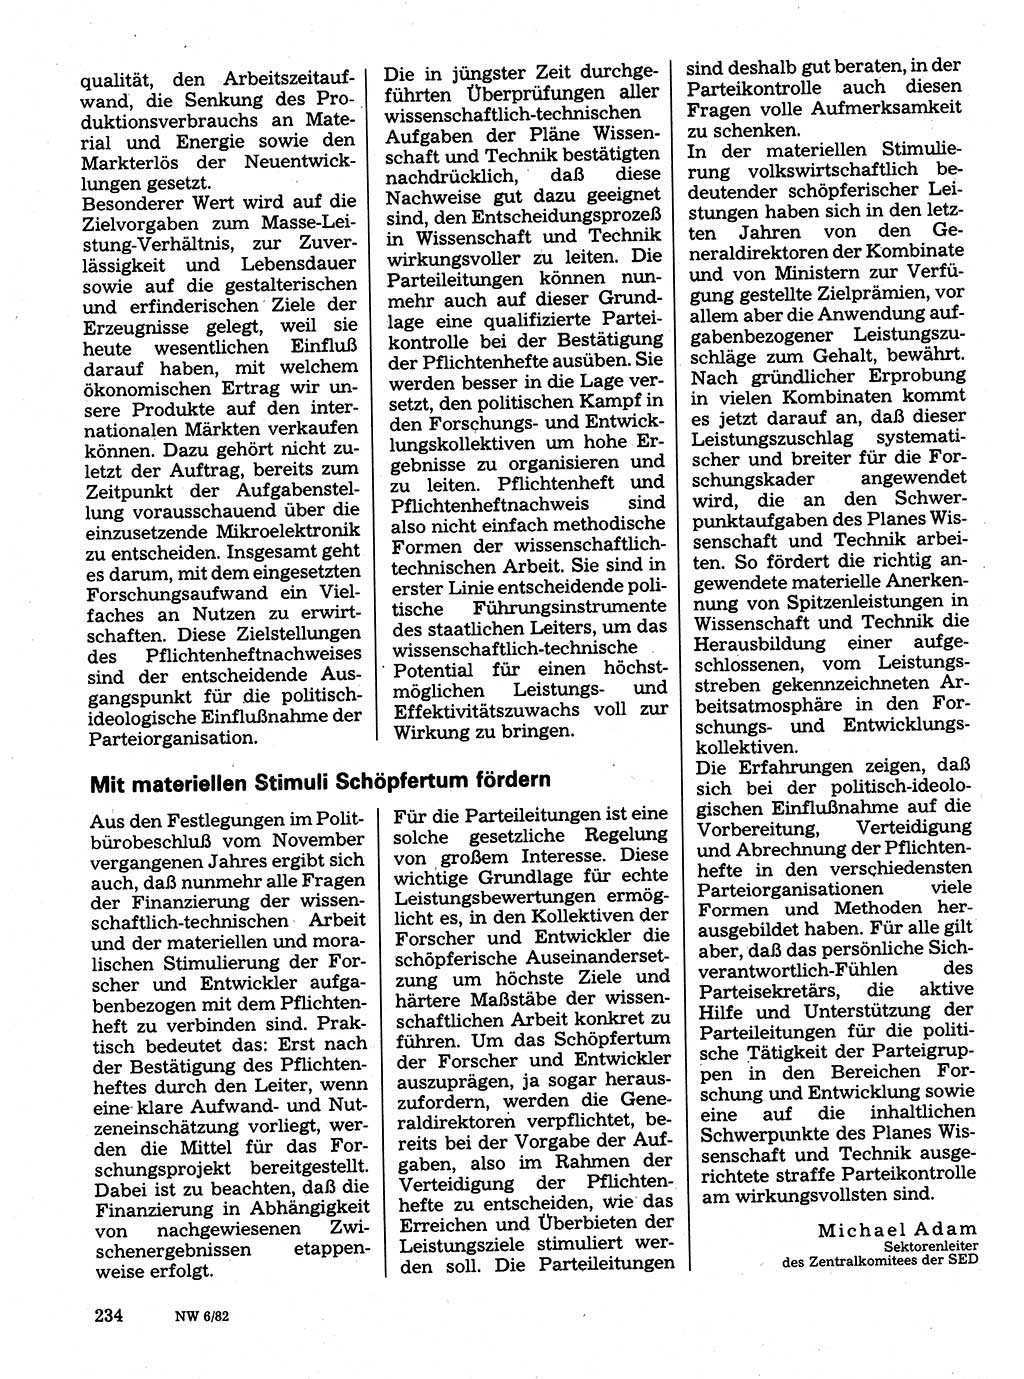 Neuer Weg (NW), Organ des Zentralkomitees (ZK) der SED (Sozialistische Einheitspartei Deutschlands) für Fragen des Parteilebens, 37. Jahrgang [Deutsche Demokratische Republik (DDR)] 1982, Seite 234 (NW ZK SED DDR 1982, S. 234)